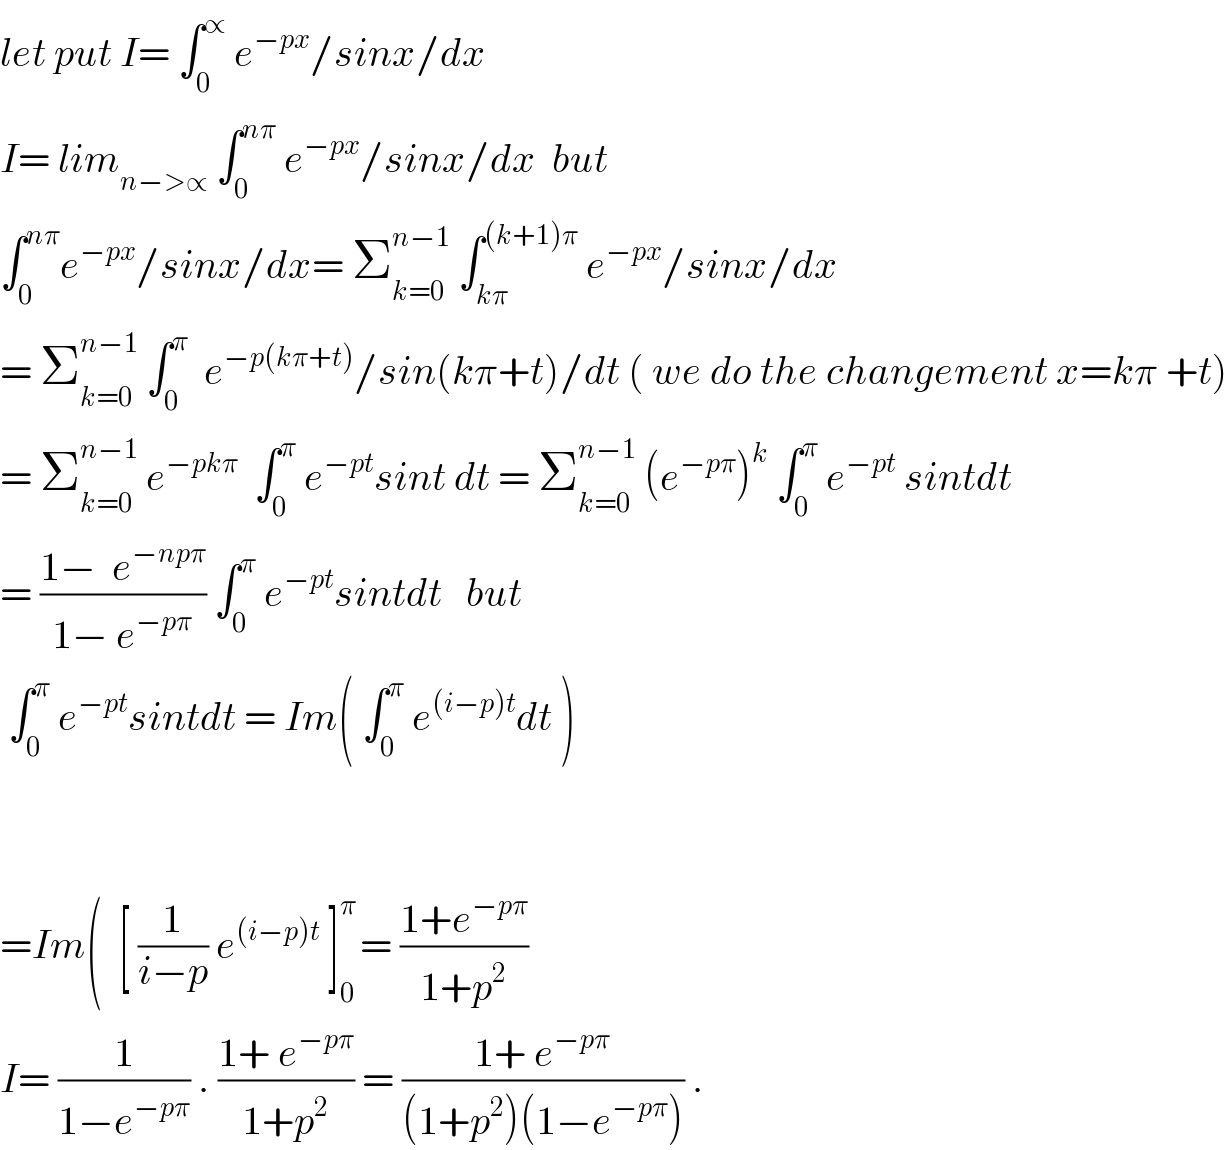 let put I= ∫_0 ^∝  e^(−px) /sinx/dx  I= lim_(n−>∝)  ∫_0 ^(nπ)  e^(−px) /sinx/dx  but   ∫_0 ^(nπ) e^(−px) /sinx/dx= Σ_(k=0) ^(n−1)  ∫_(kπ) ^((k+1)π)  e^(−px) /sinx/dx  = Σ_(k=0) ^(n−1)  ∫_0 ^π   e^(−p(kπ+t)) /sin(kπ+t)/dt ( we do the changement x=kπ +t)  = Σ_(k=0) ^(n−1)  e^(−pkπ)   ∫_0 ^π  e^(−pt) sint dt = Σ_(k=0) ^(n−1)  (e^(−pπ) )^k  ∫_0 ^π  e^(−pt)  sintdt  = ((1−  e^(−npπ) )/(1− e^(−pπ) )) ∫_0 ^π  e^(−pt) sintdt   but   ∫_0 ^π  e^(−pt) sintdt = Im( ∫_0 ^π  e^((i−p)t) dt )          =Im(  [ (1/(i−p)) e^((i−p)t)  ]_0 ^(π ) = ((1+e^(−pπ) )/(1+p^2 ))  I= (1/(1−e^(−pπ) )) . ((1+ e^(−pπ) )/(1+p^2 )) = ((1+ e^(−pπ) )/((1+p^2 )(1−e^(−pπ) ))) .  